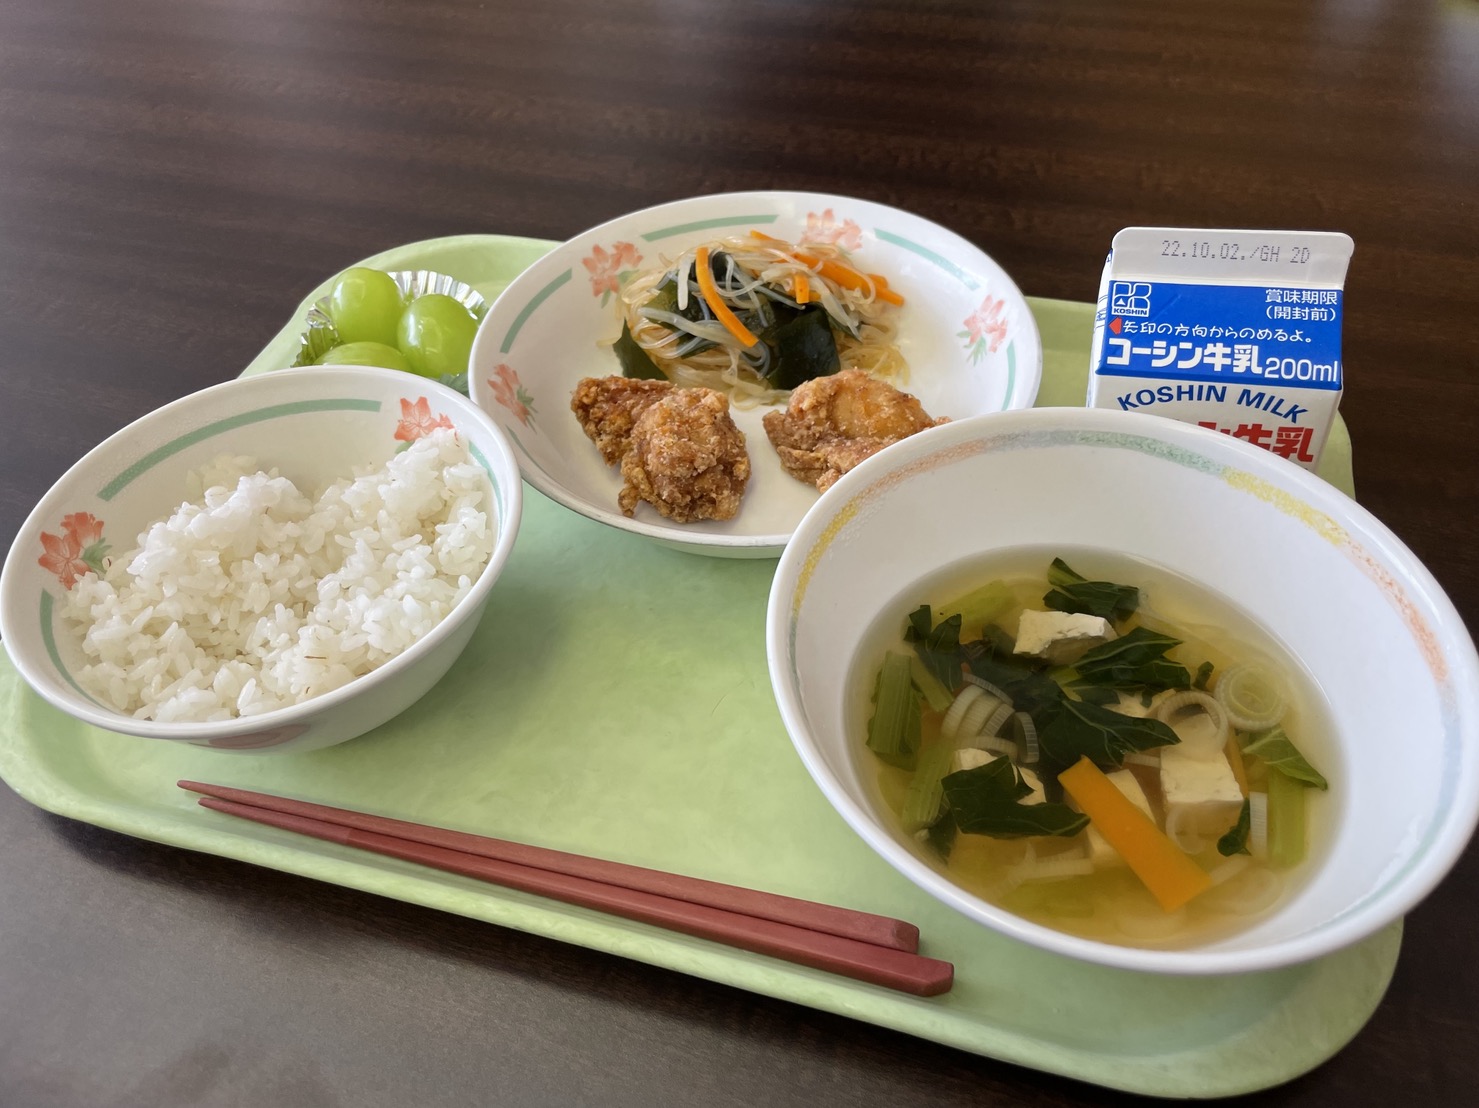 戸山小学生が考えた、内藤とうがらしを使った給食メニューを食べてきました！